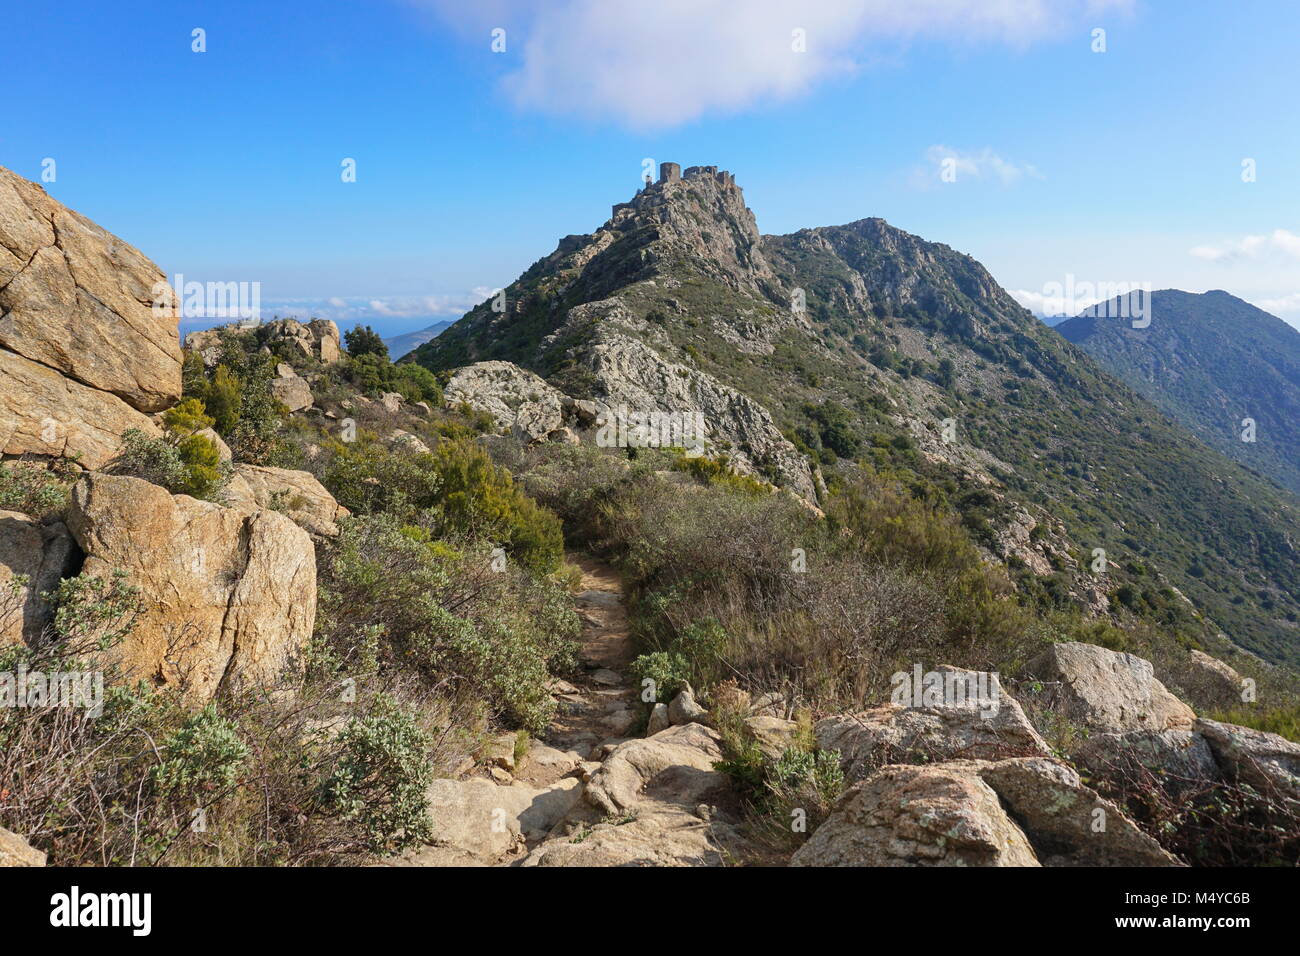 Dans le sentier menant à la montagne Verdera les ruines d'un château médiéval situé en haut d'un éperon rocheux escarpé, l'Espagne, la Catalogne, de l'Alt Emporda Banque D'Images